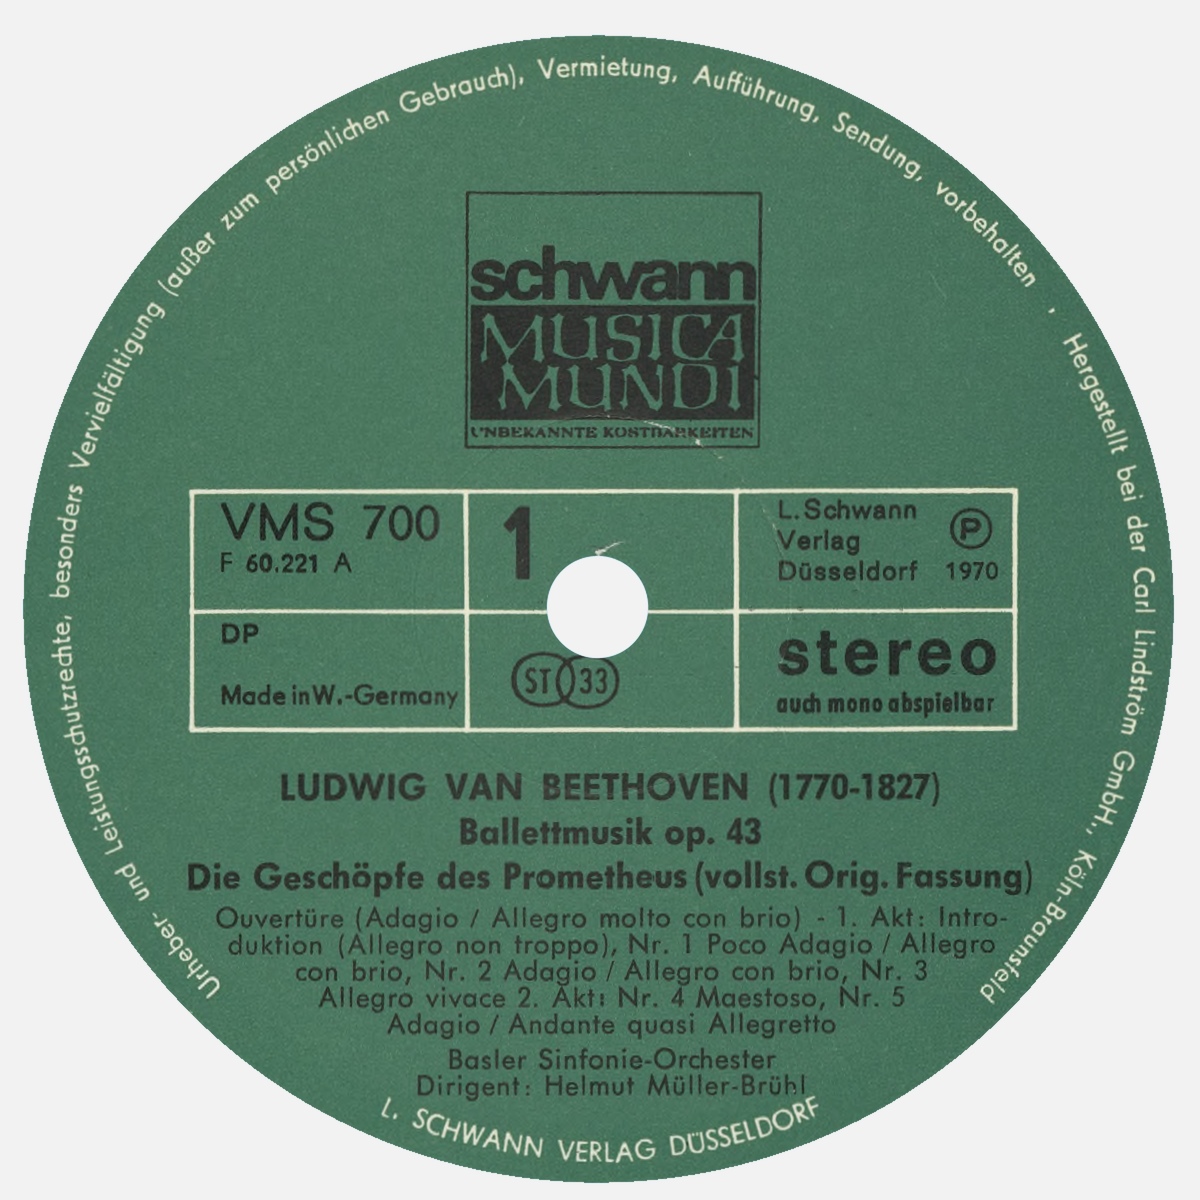 Étiquette recto du premier disque de l'album Schwann Musica Mundi VMS 700/701, cliquer pour un agrandissement de la photo